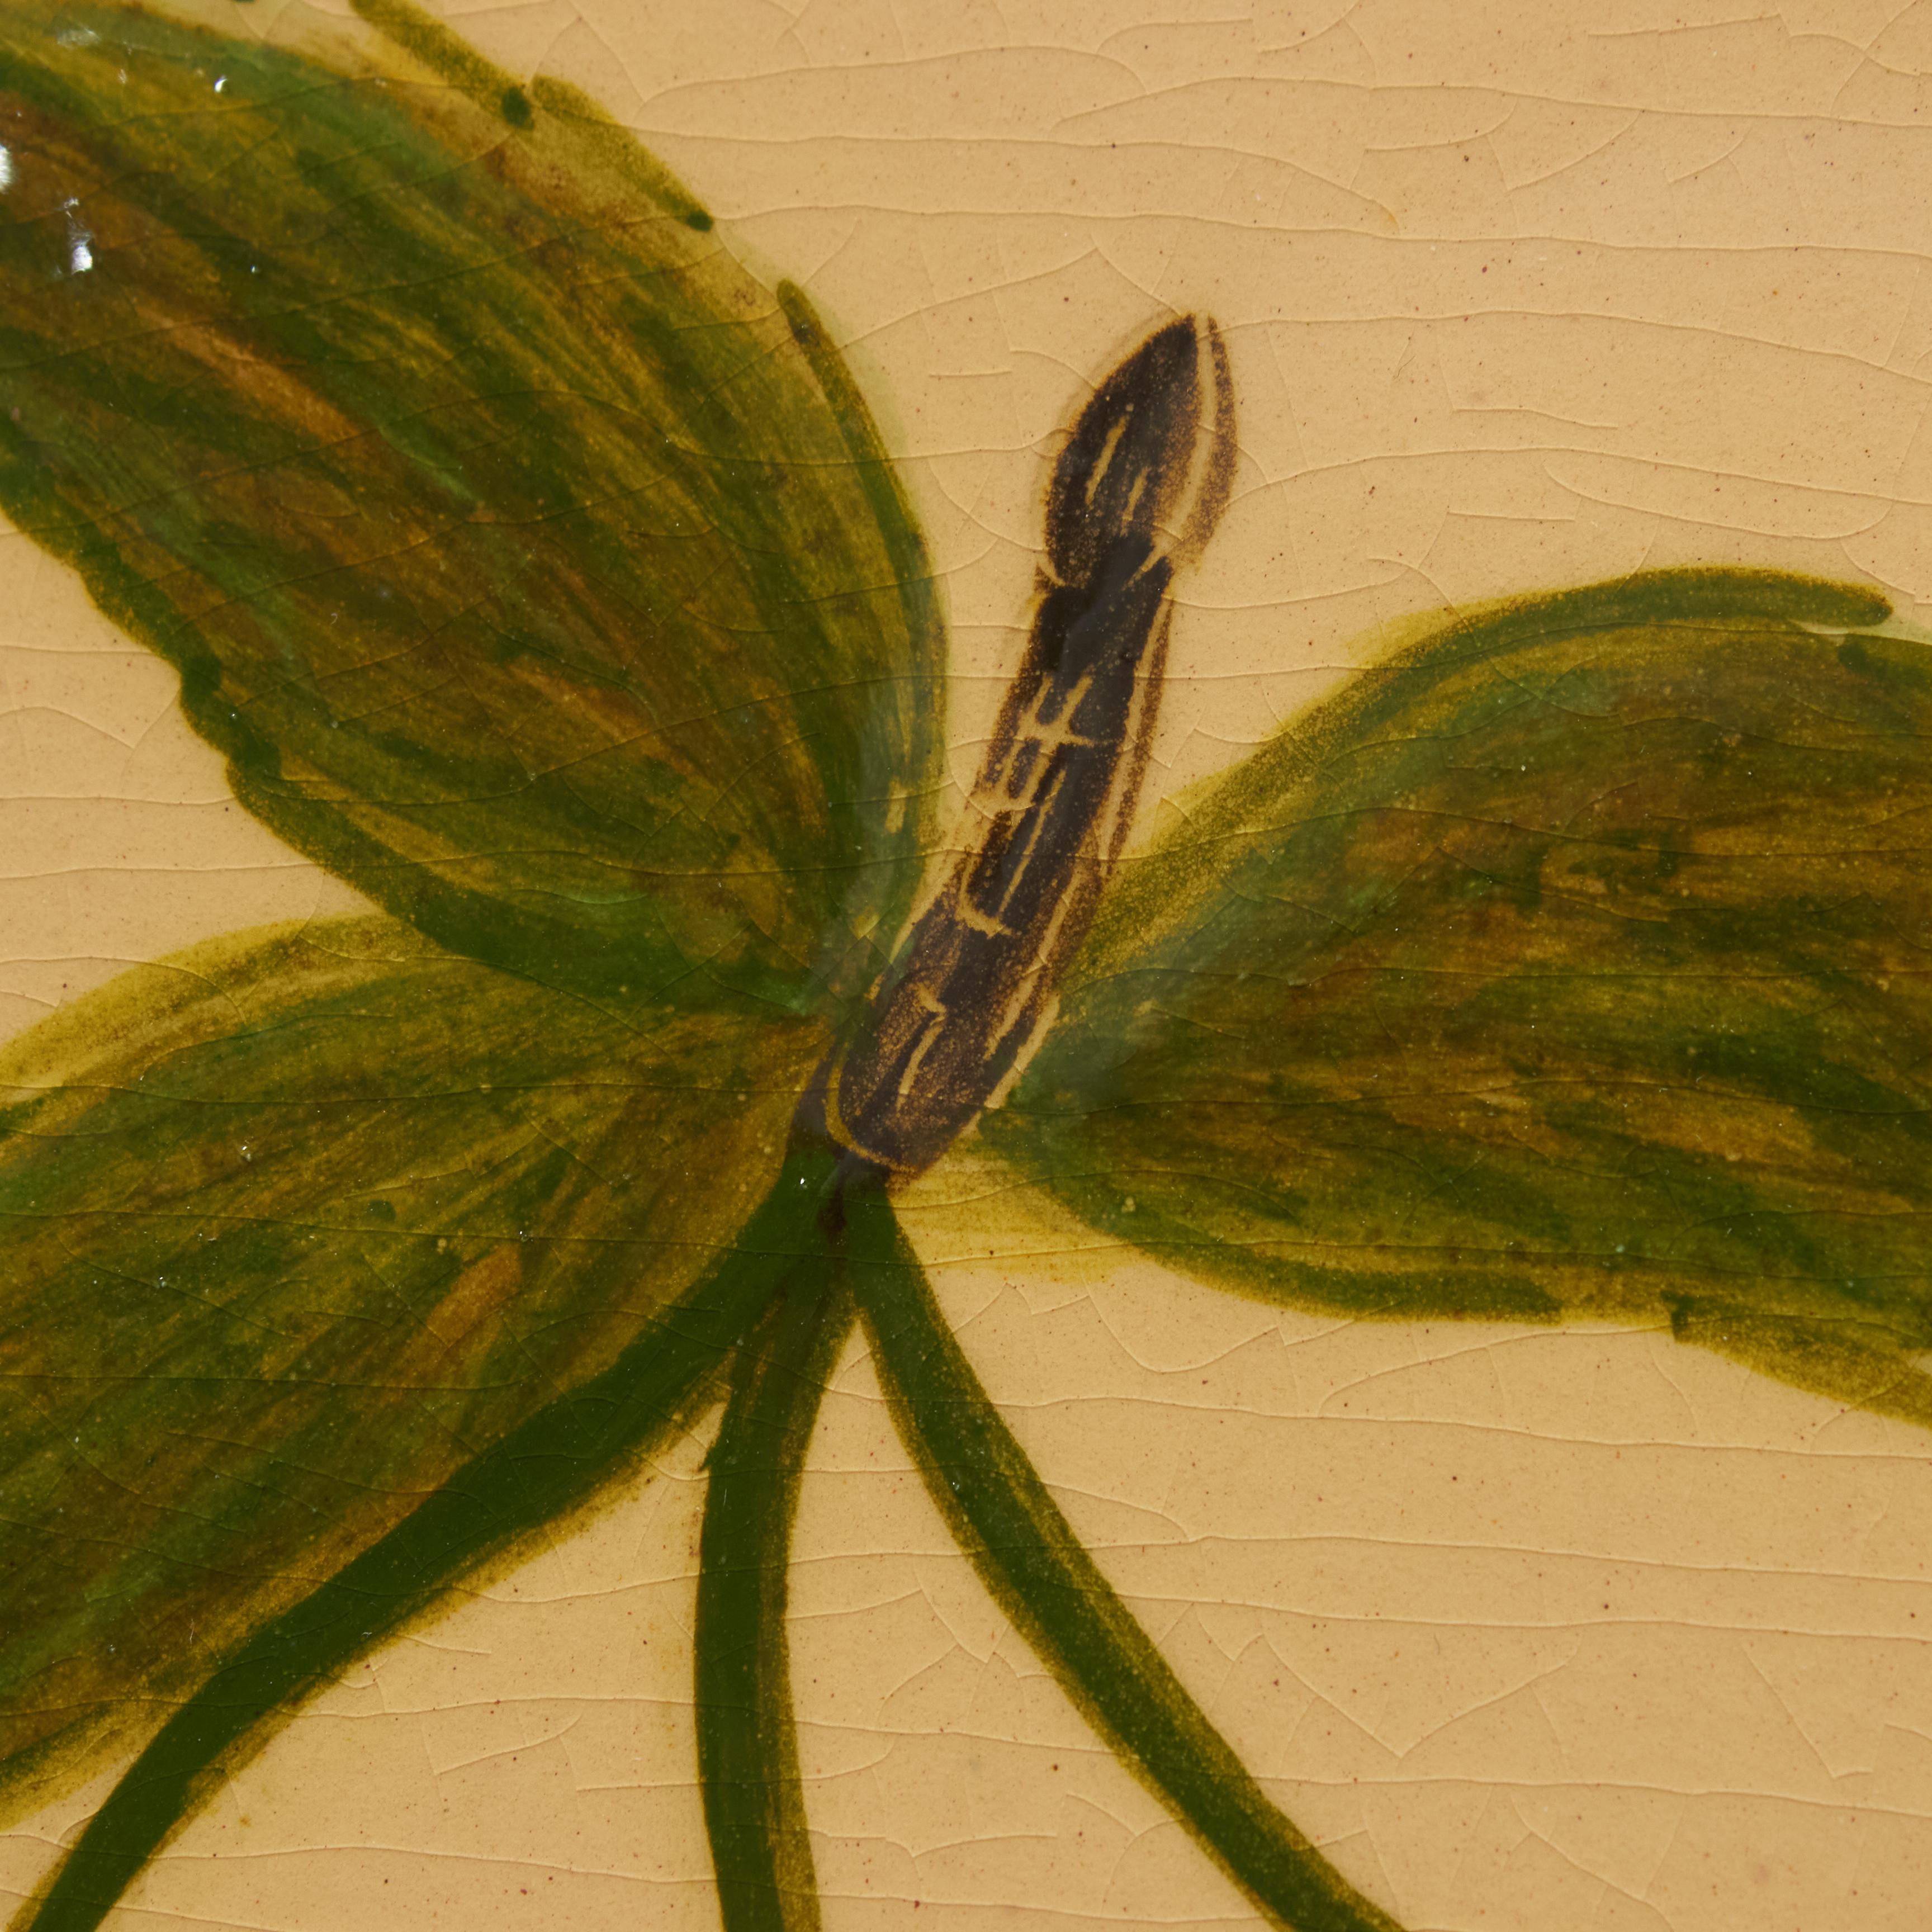 Keramisches, handbemaltes Kunstwerk einer Pflanze des katalanischen Künstlers Diaz Costa, um 1960.
Gerahmt.

Im Originalzustand, mit geringfügigen Gebrauchsspuren, die dem Alter und dem Gebrauch entsprechen, wobei eine schöne Patina erhalten bleibt.